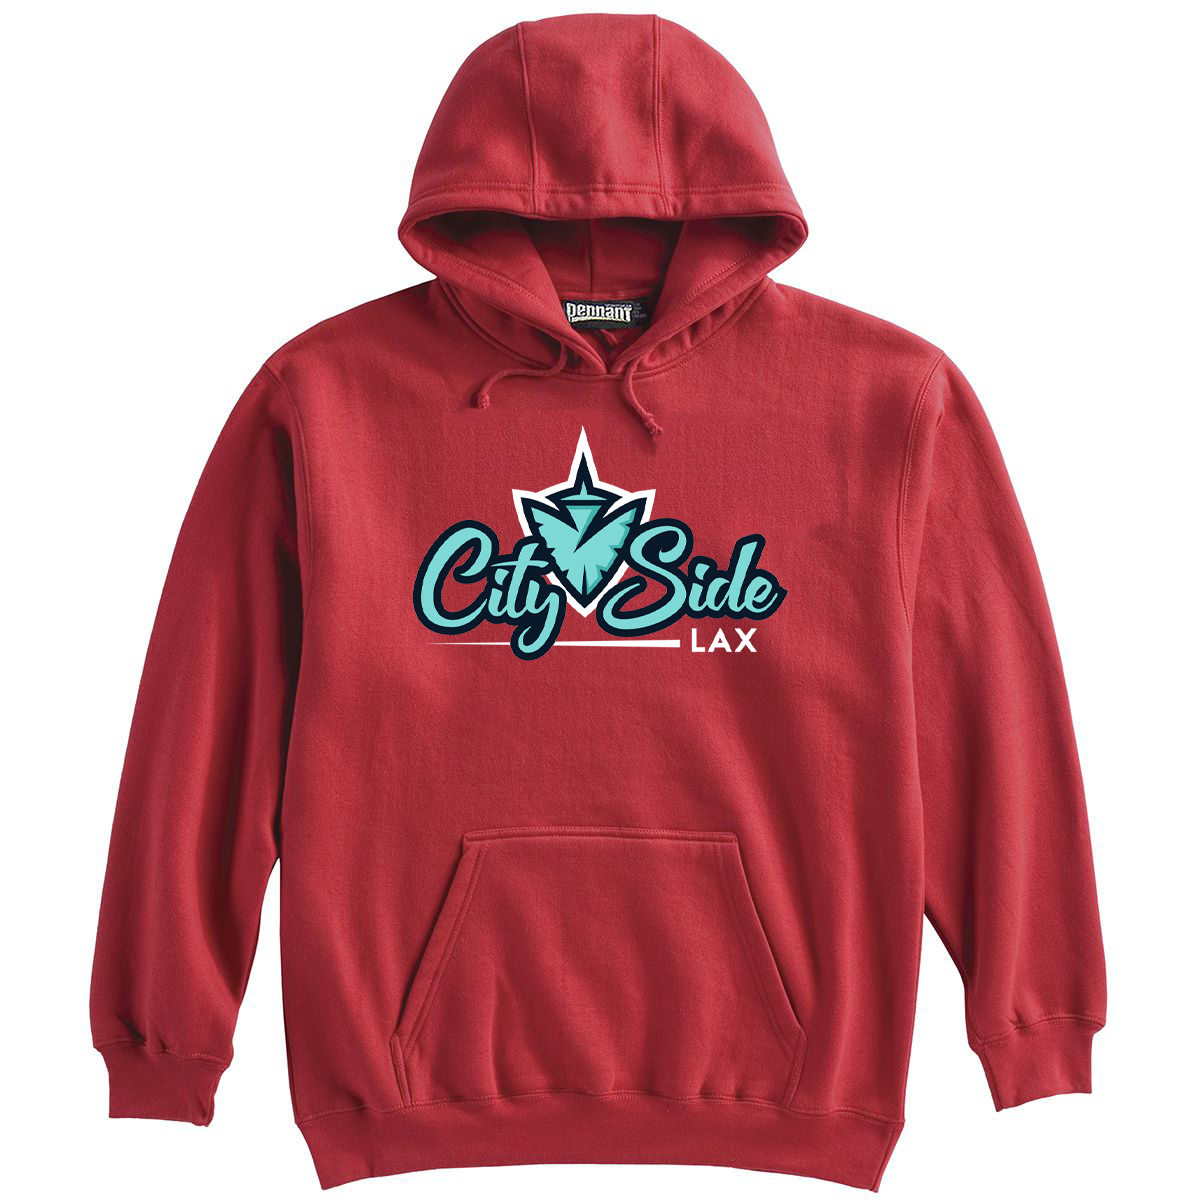 CitySide Lacrosse Sweatshirt